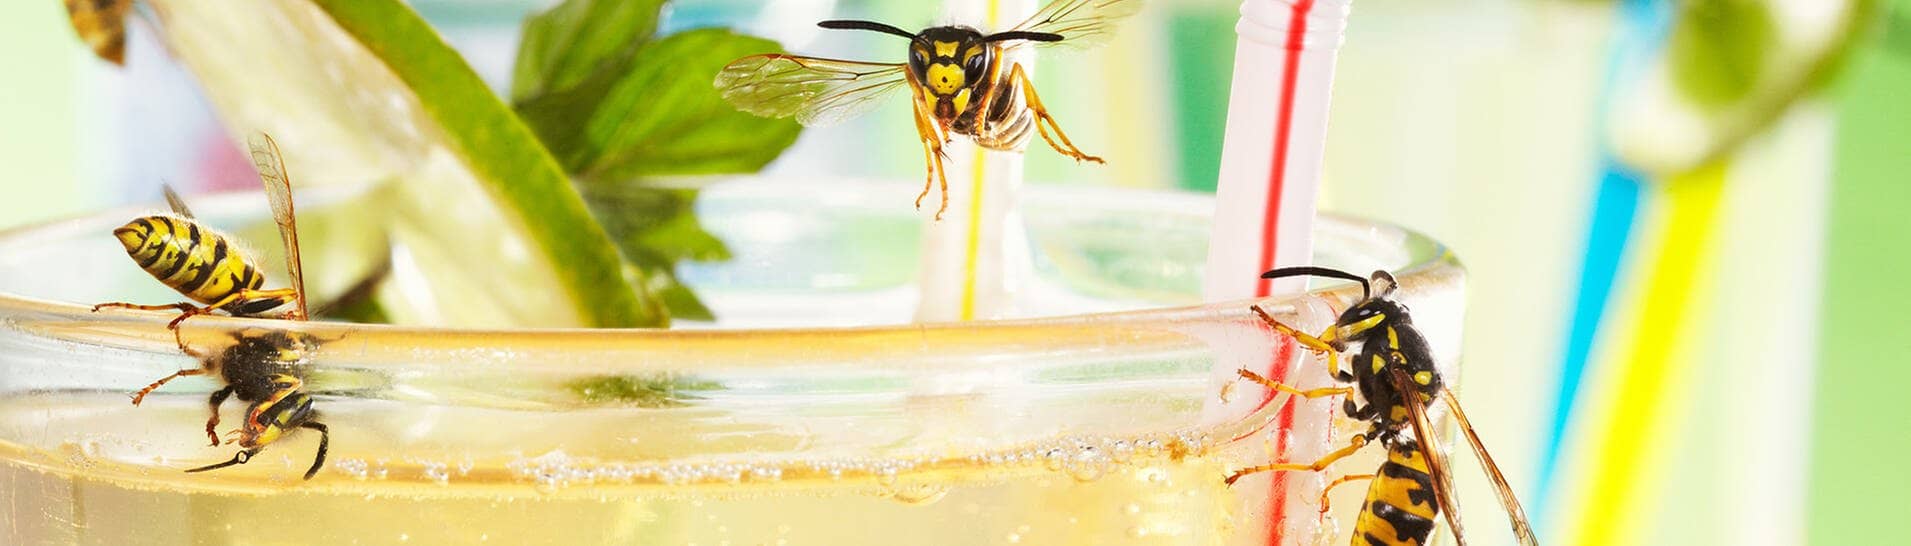 Wespen im Sommer-Drink